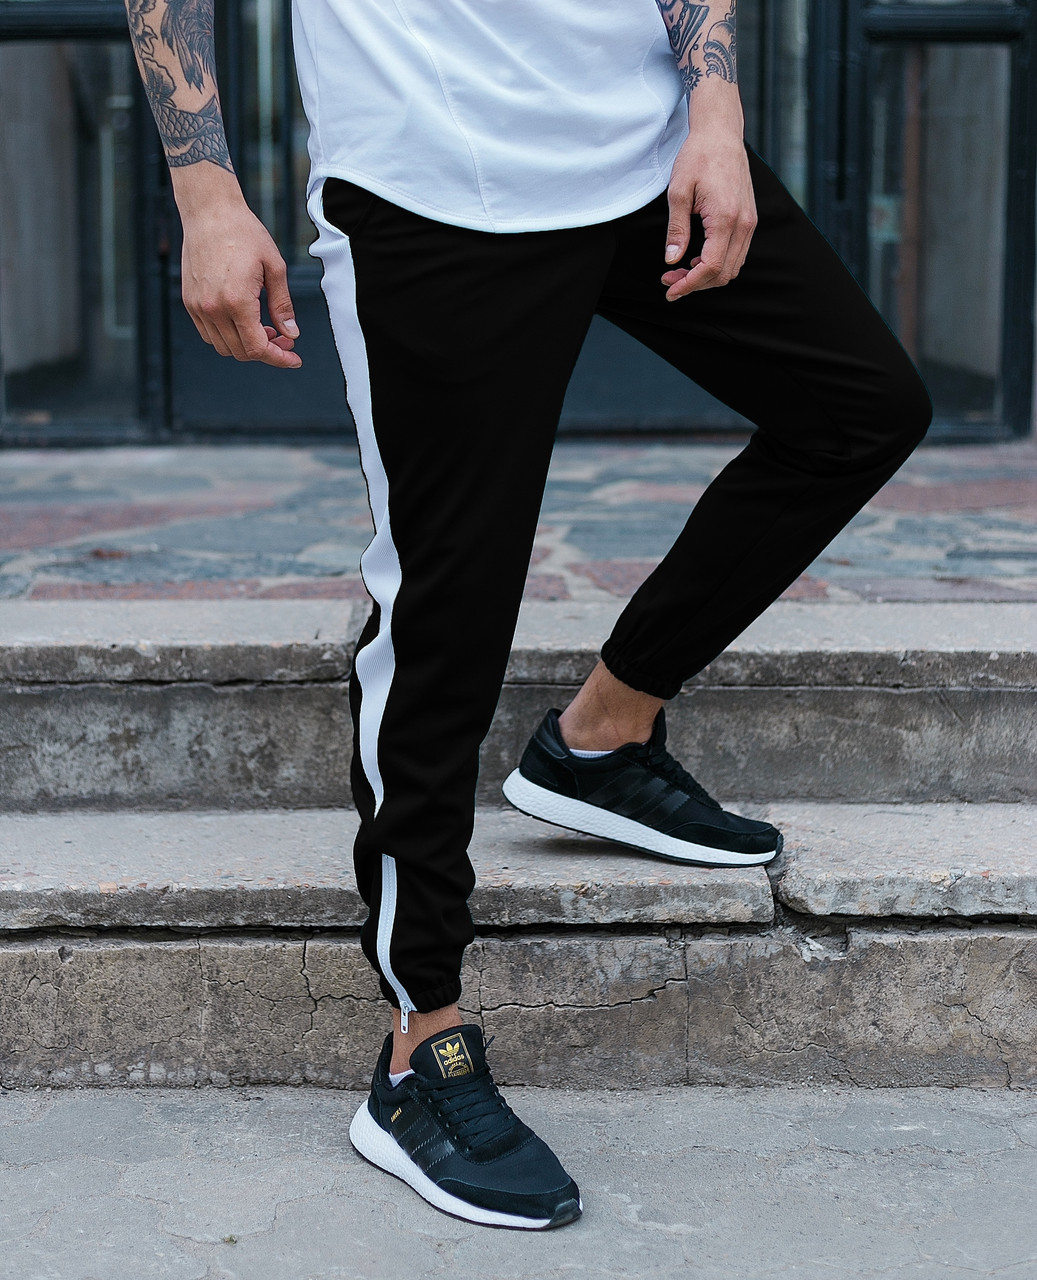 Спортивные штаны черные с белой полоской (лампасом) мужские бренд ТУР модель Рокки (Rocky) TURWEAR - Фото 3